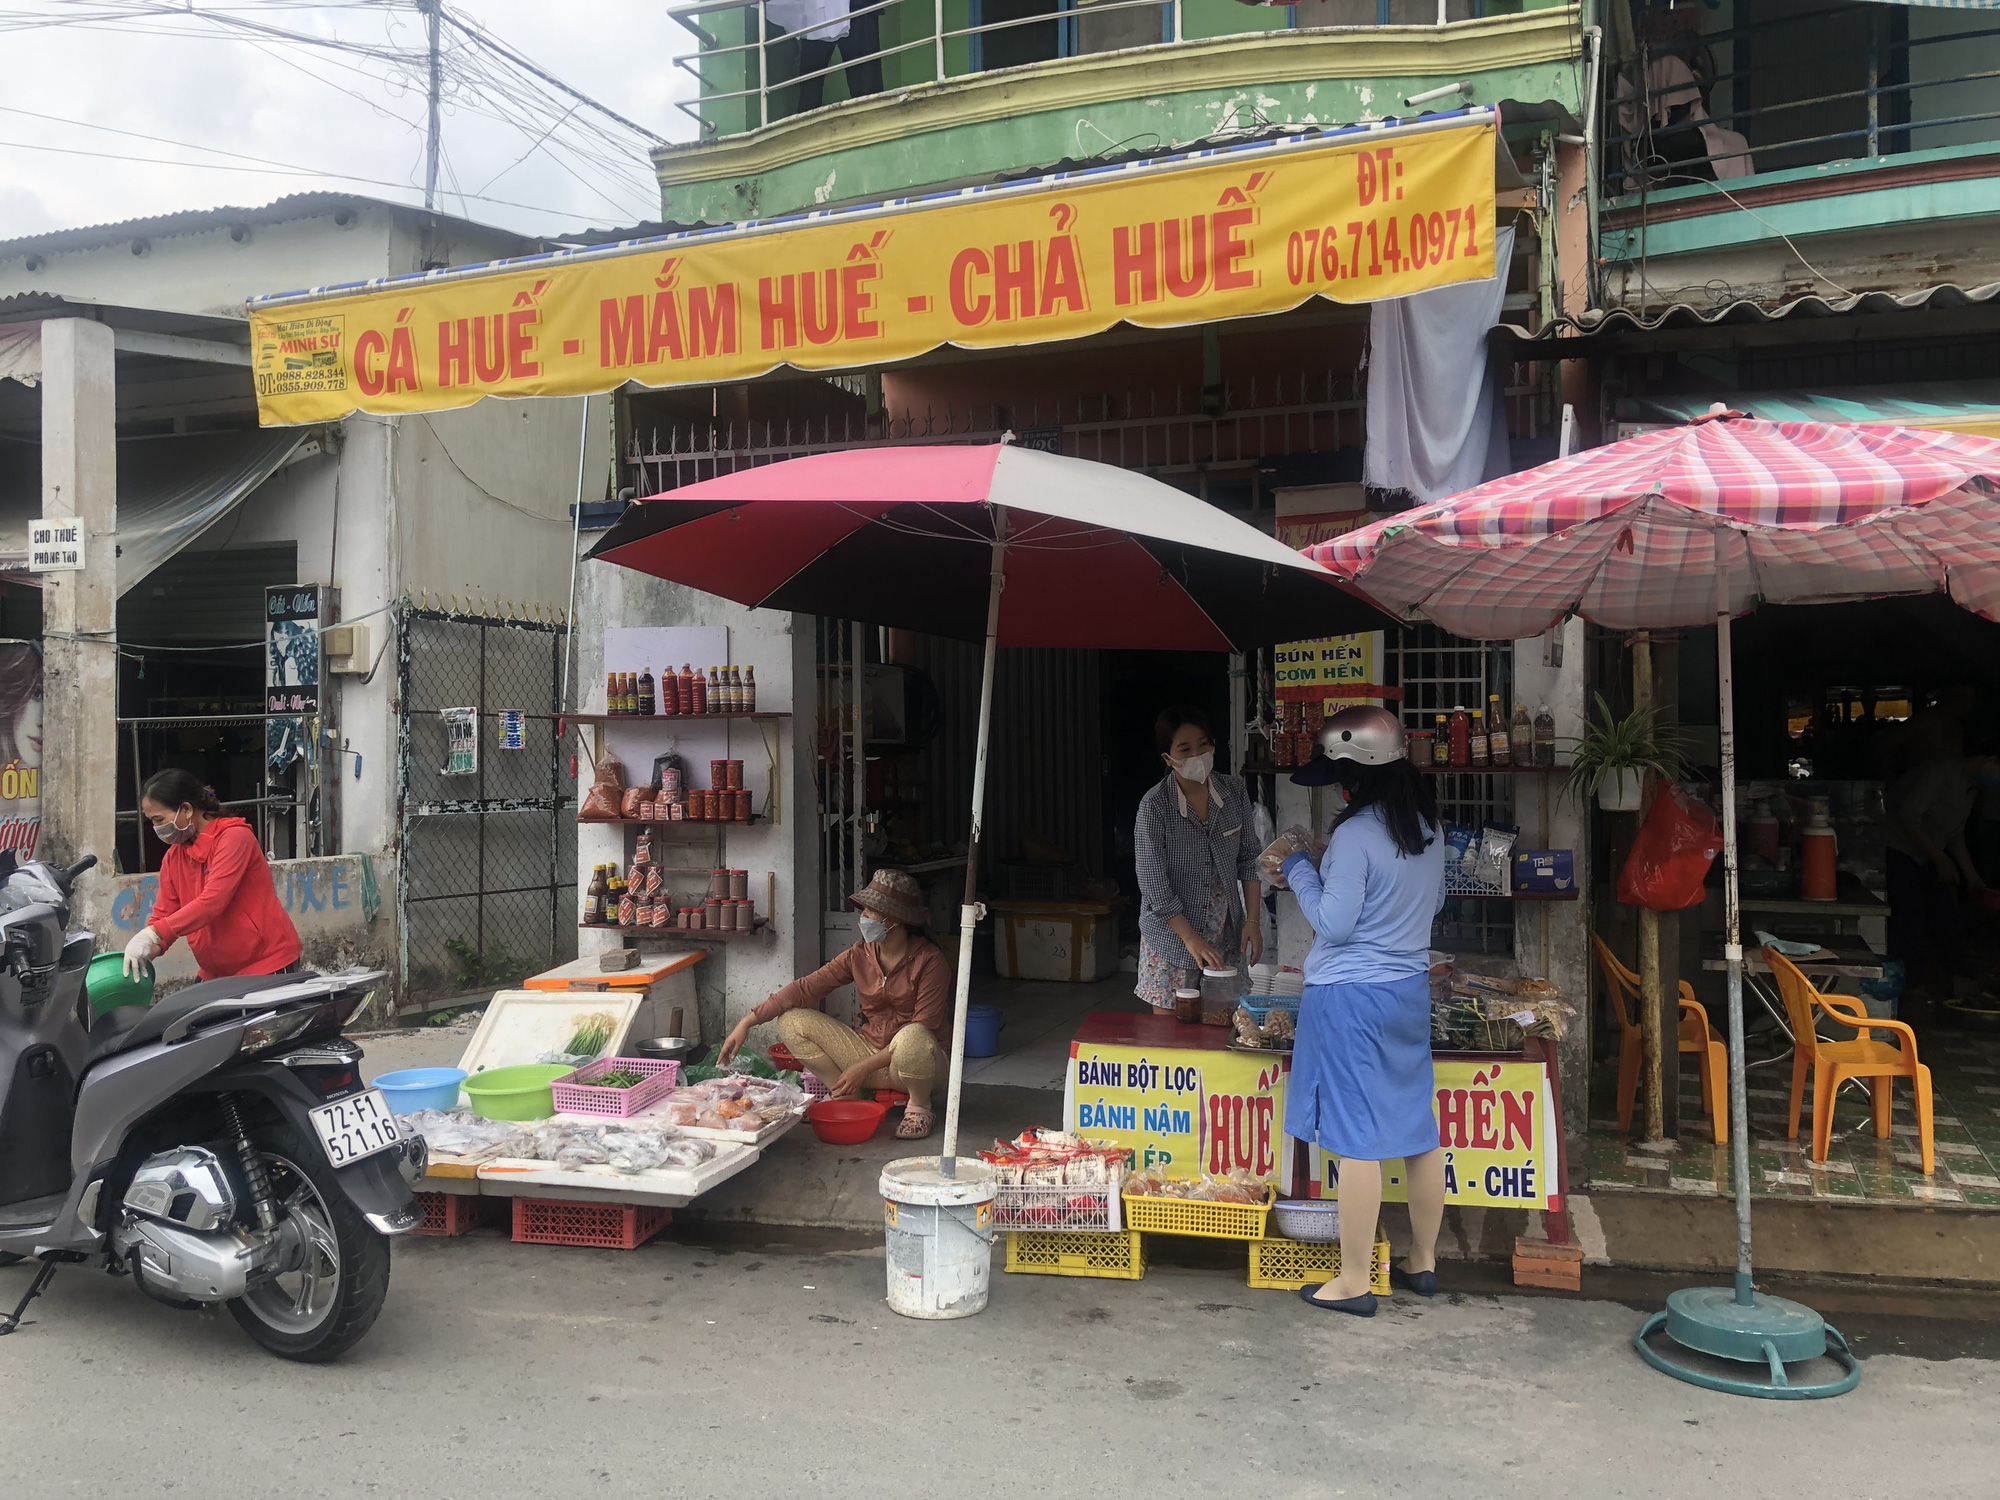 
Ngôi chợ tự phát với những tiếng &quot;mô tê răng rứa&quot; nằm ở vùng ven Sài Gòn - Ảnh 1.